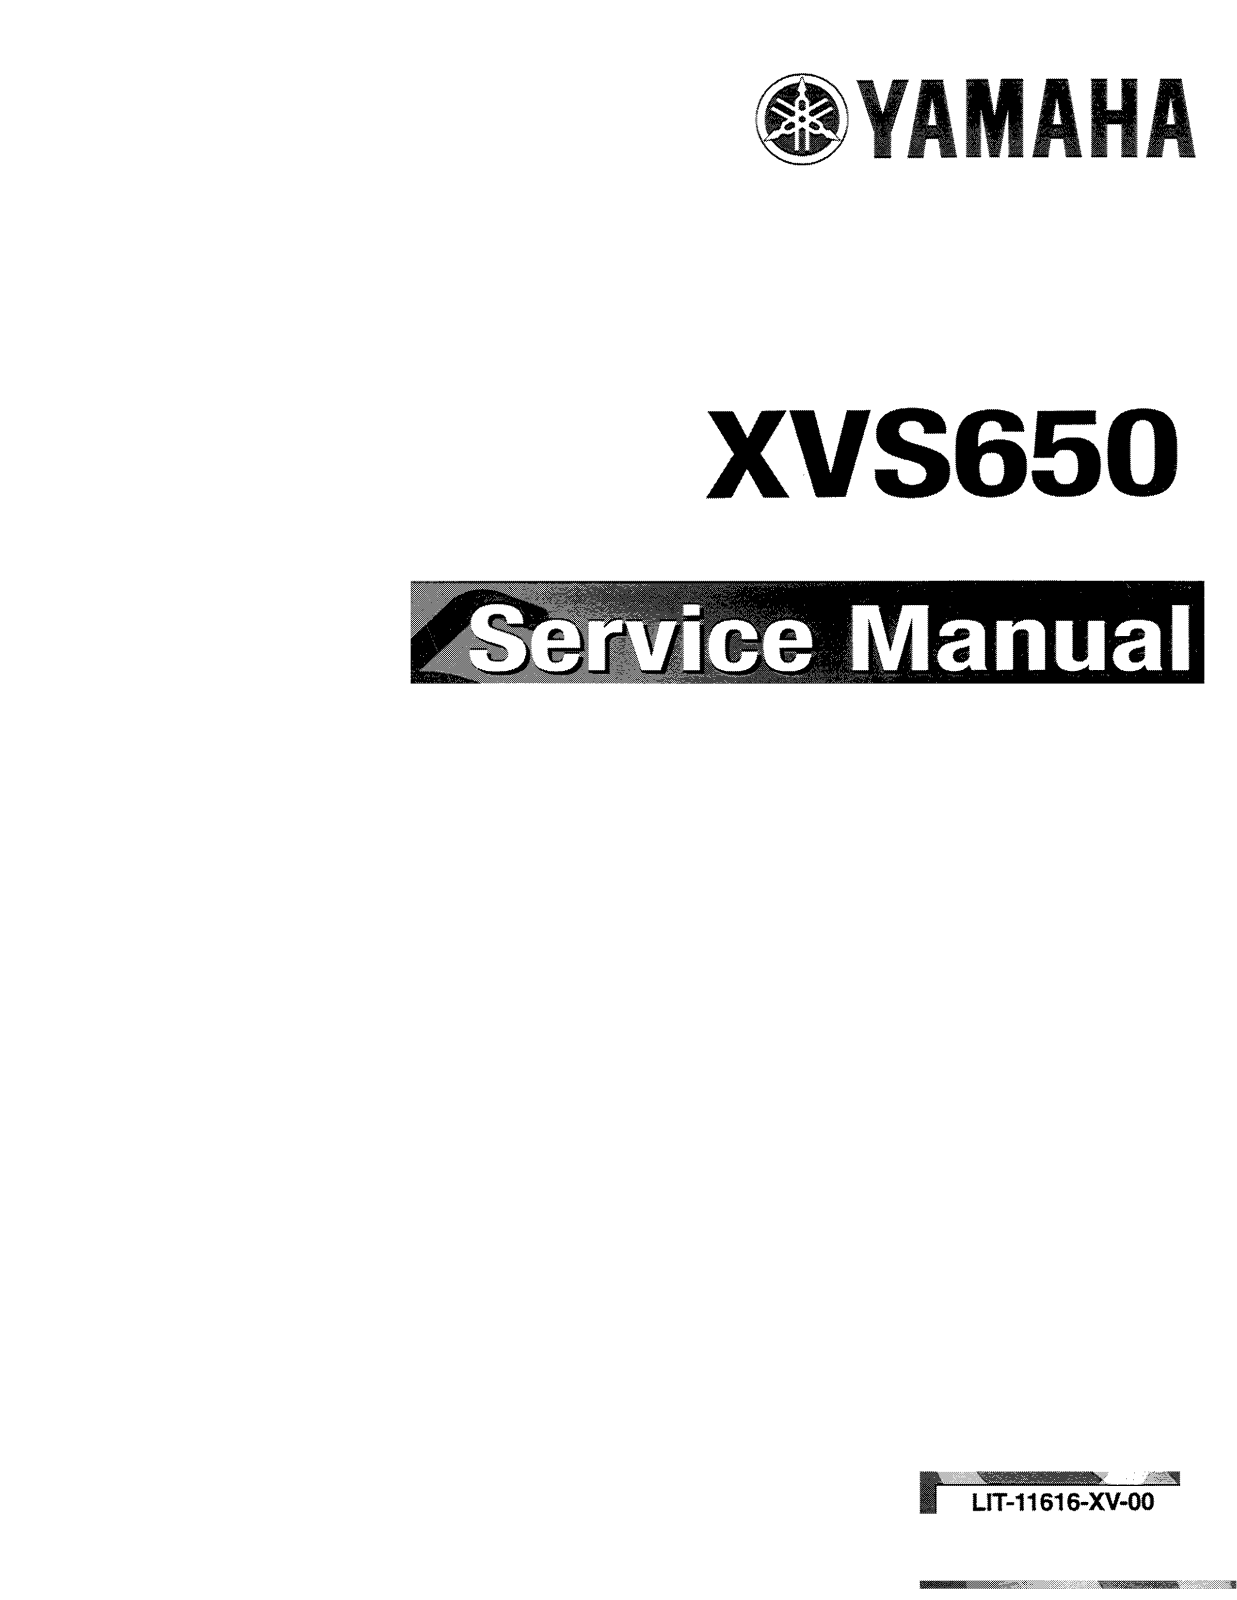 YAMAHA XVS650 SERVICE MANUALS